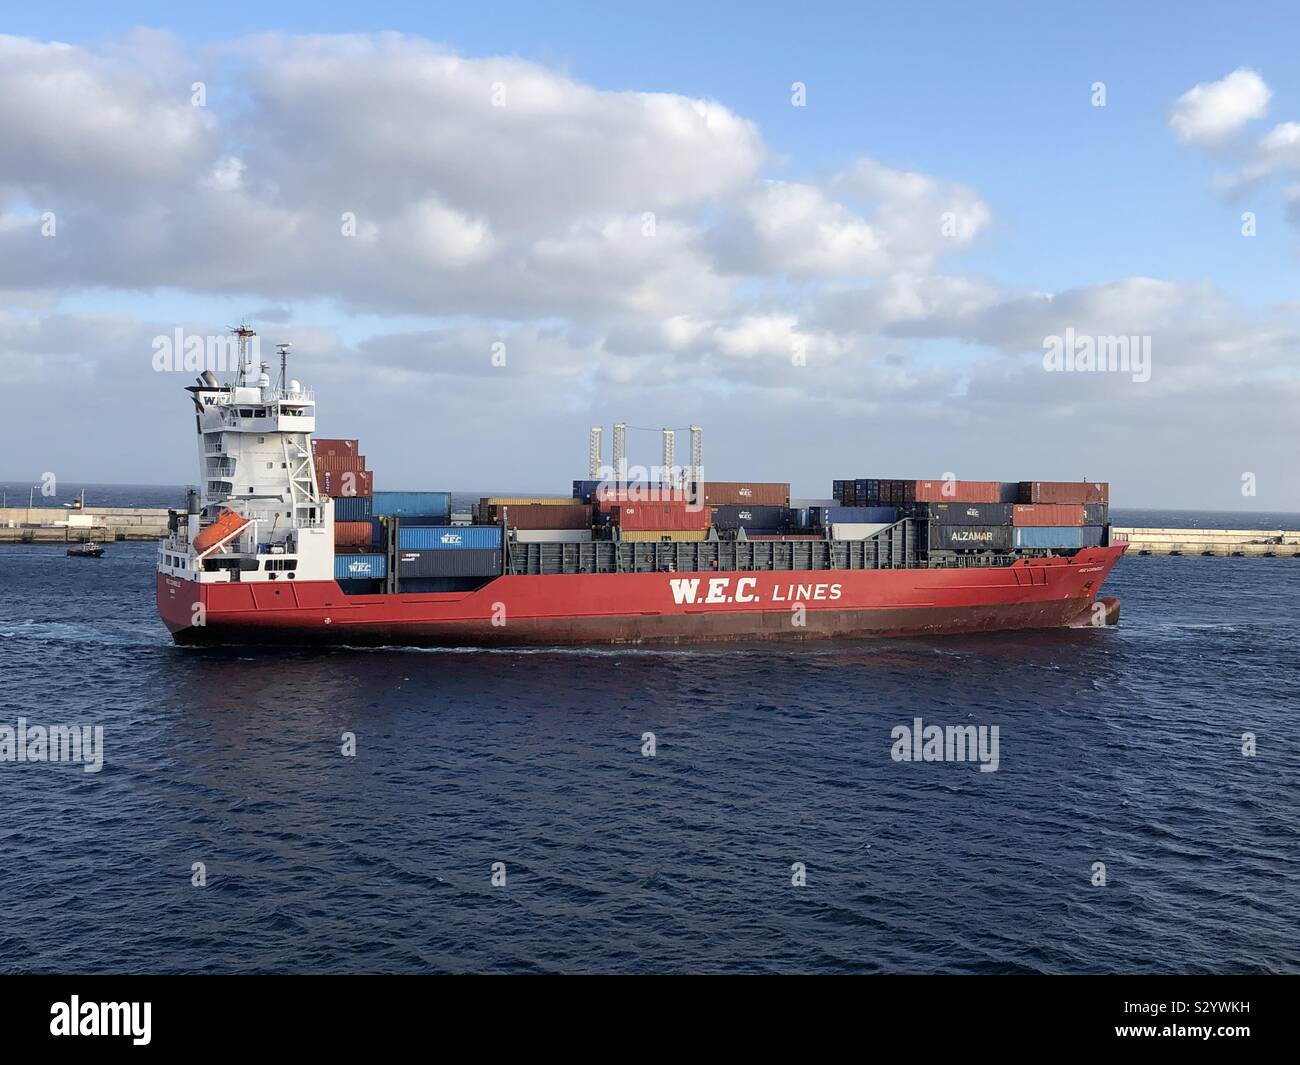 Arrecife/Lanzarote, 08.11.2019: Frachtschiff WEC Corneille der W.E.C. Lines beim Einlaufen in den Hafen von Arrecife Stock Photo